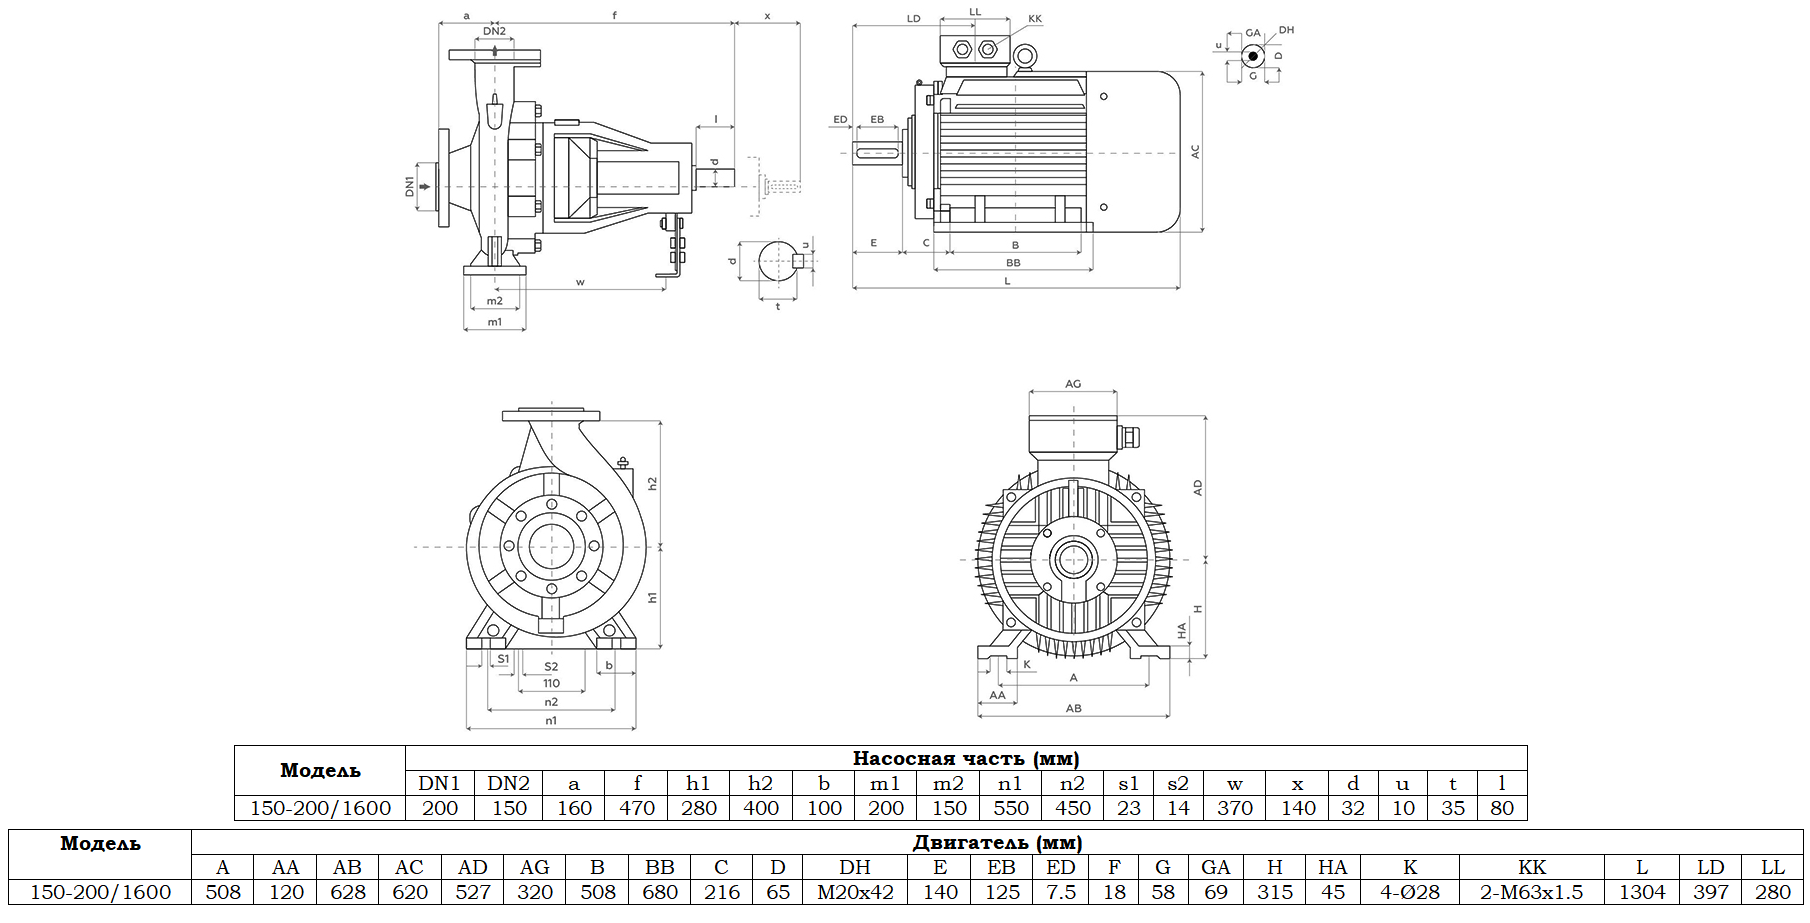 Габаритный чертеж модели Zenova SENSA 150-200/1600